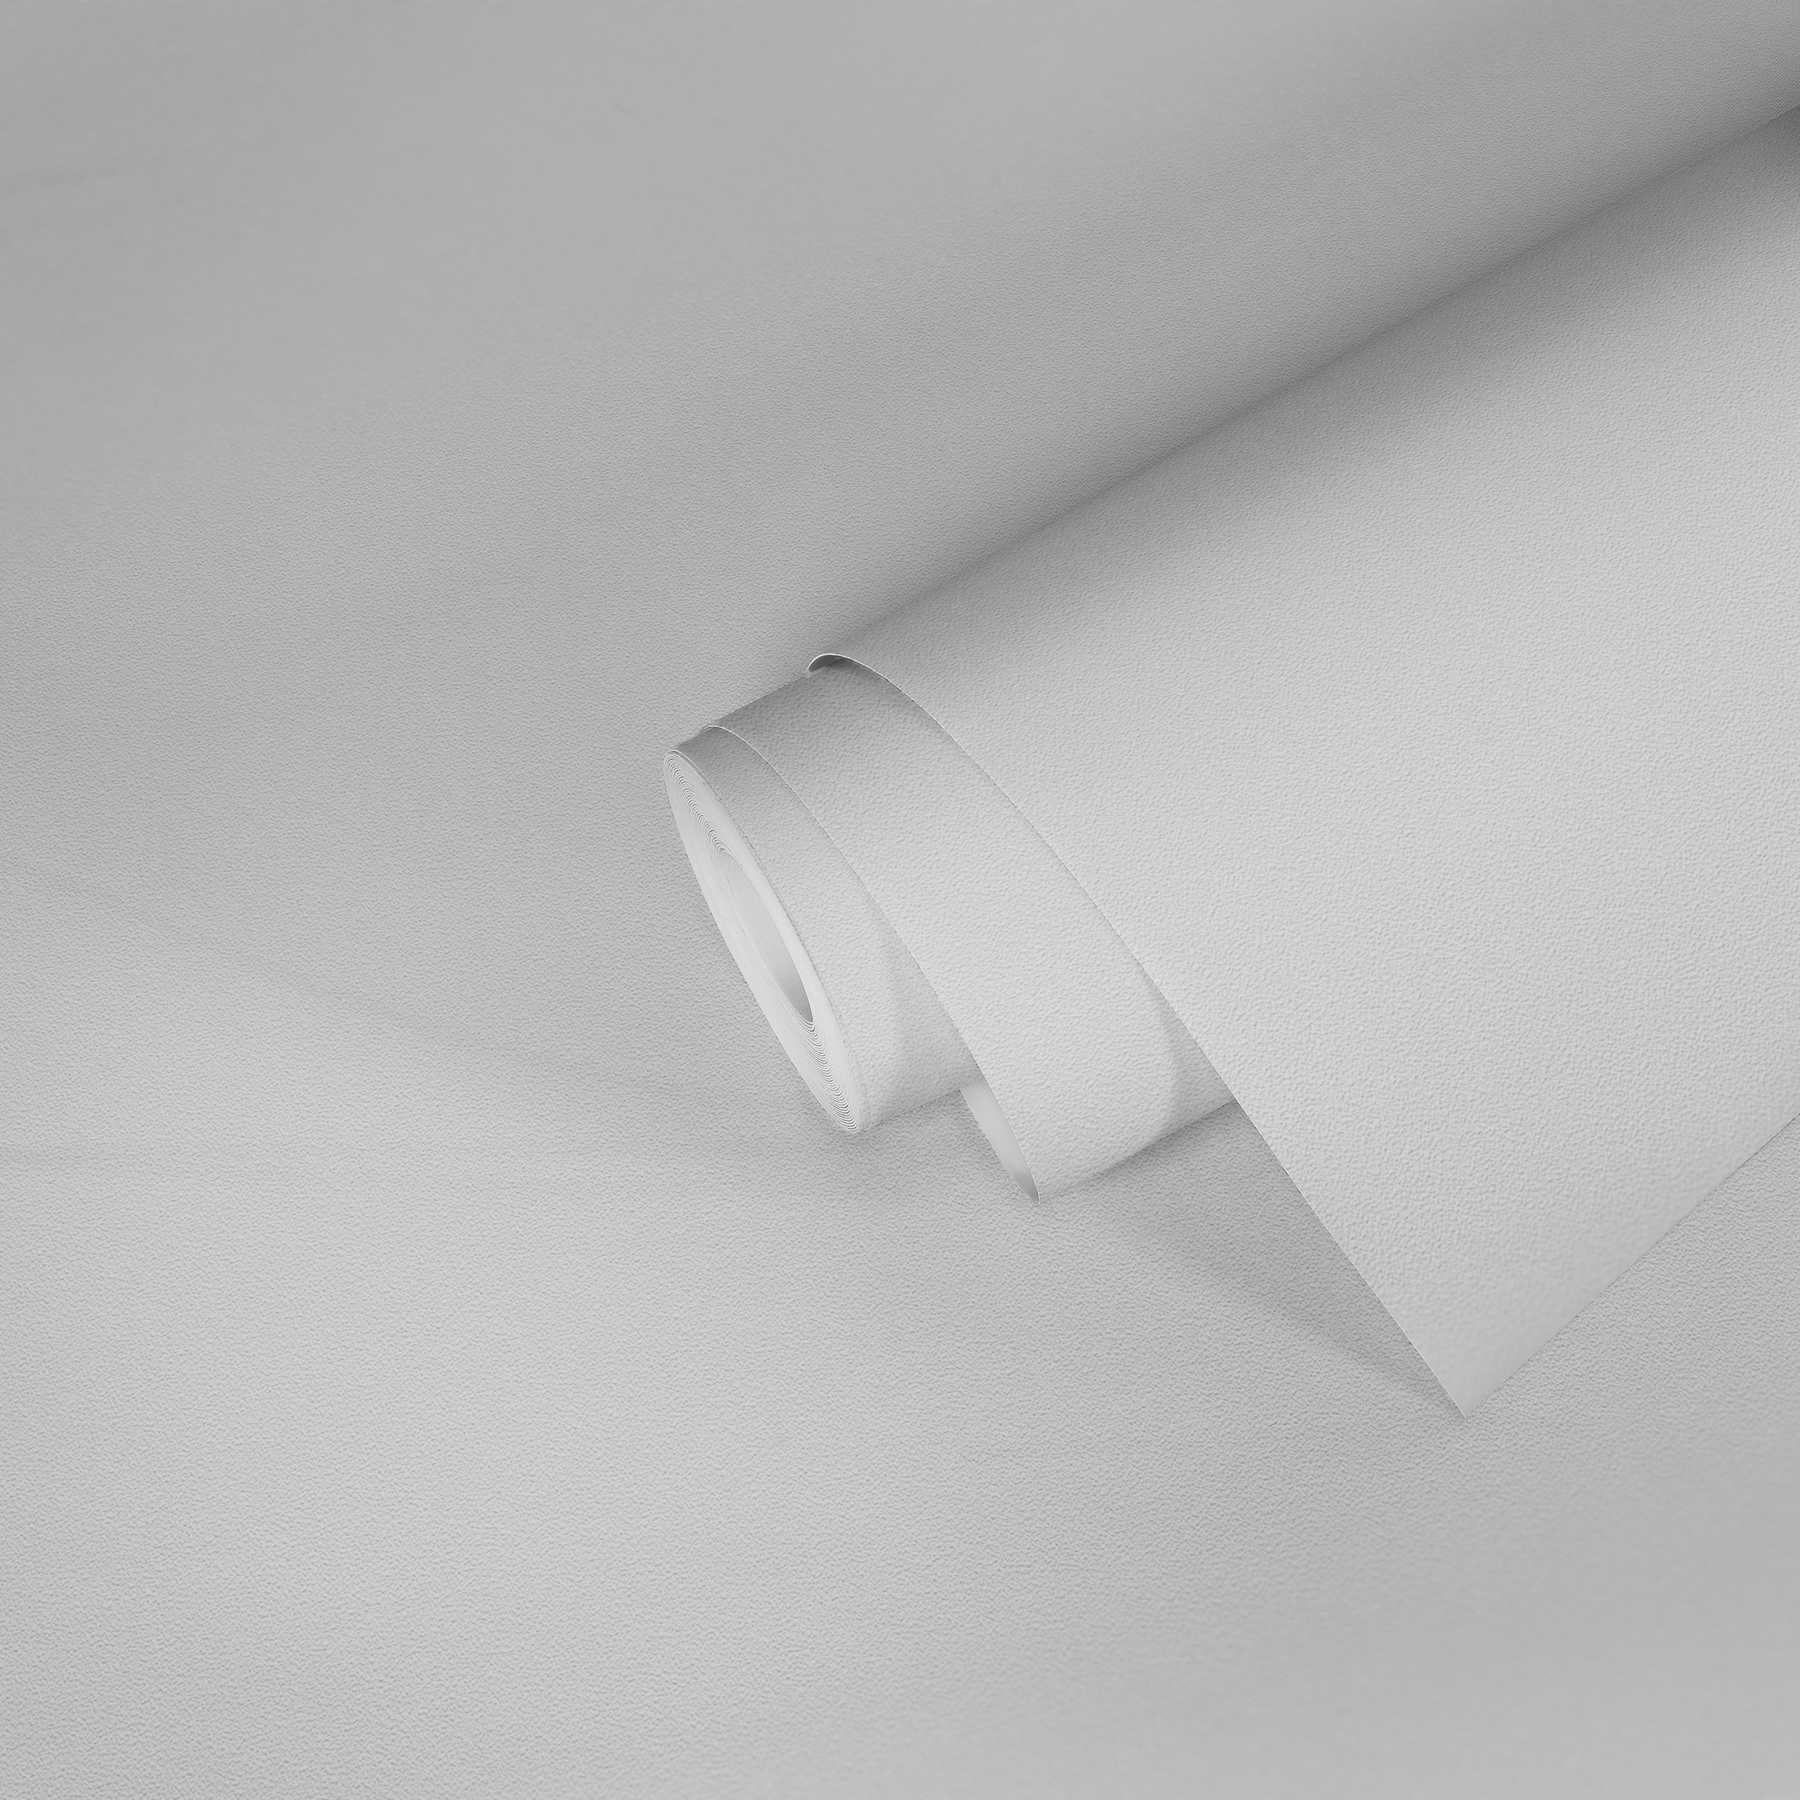             Carta da parati verniciabile in tessuto non tessuto a struttura fine - bianco
        